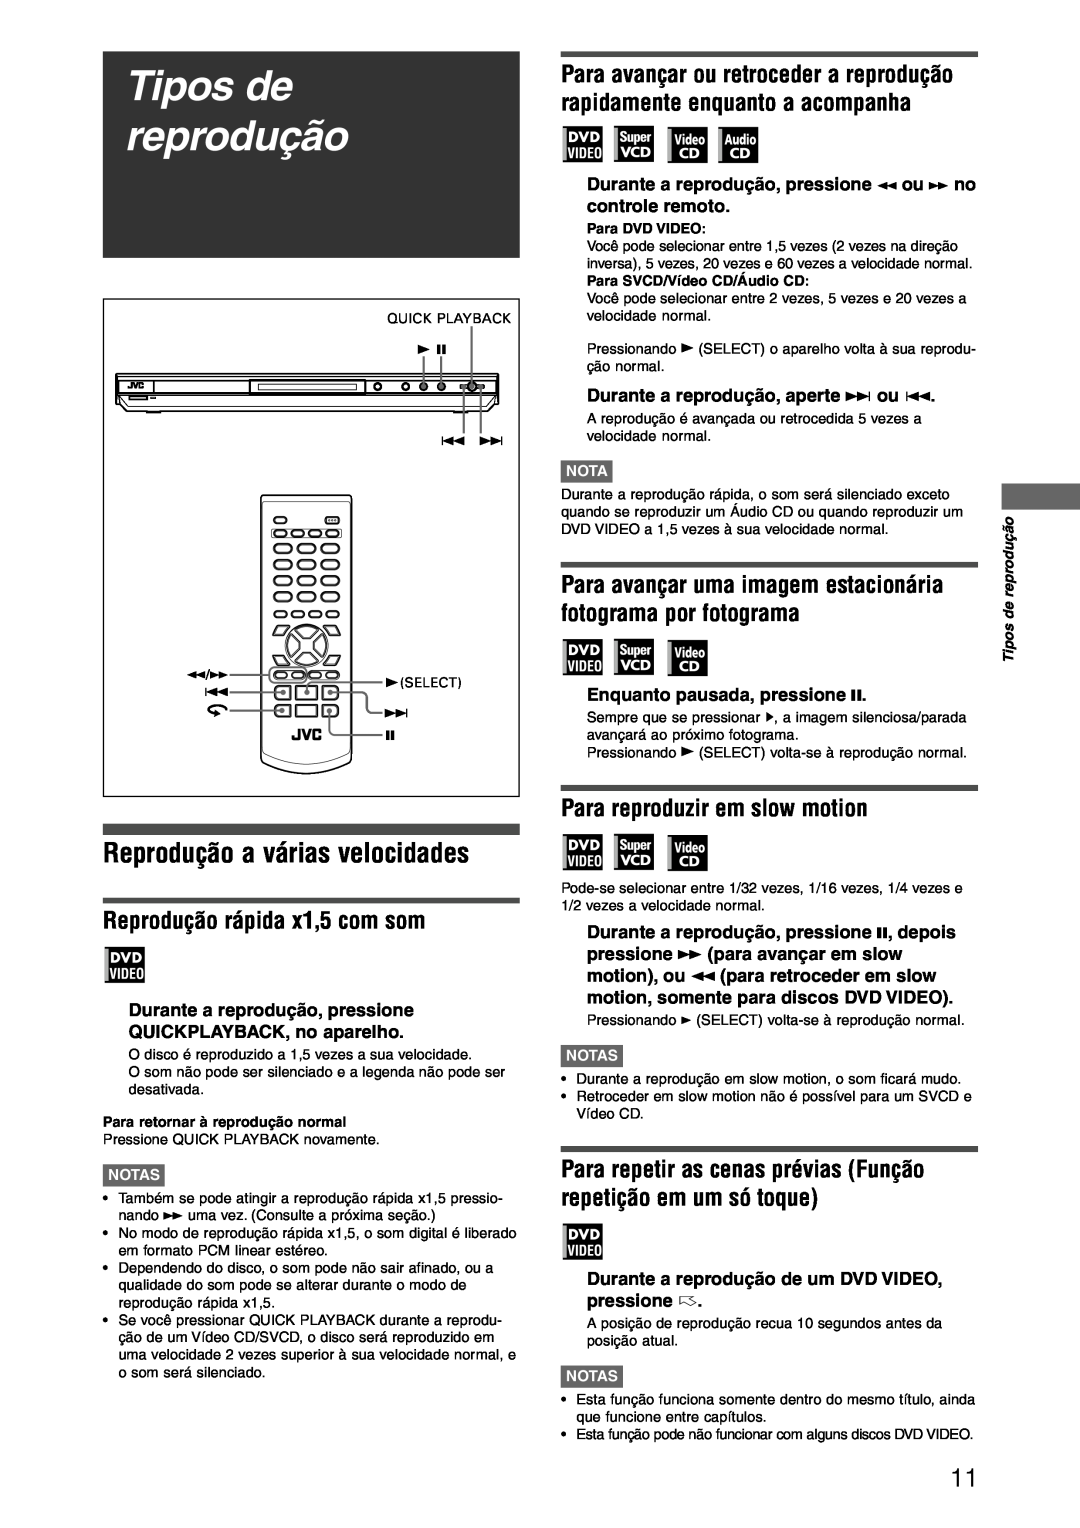 JVC XV-N312SUW manual Tipos de reprodução, Reprodução rápida x1,5 com som, Para avançar uma imagem estacionária 